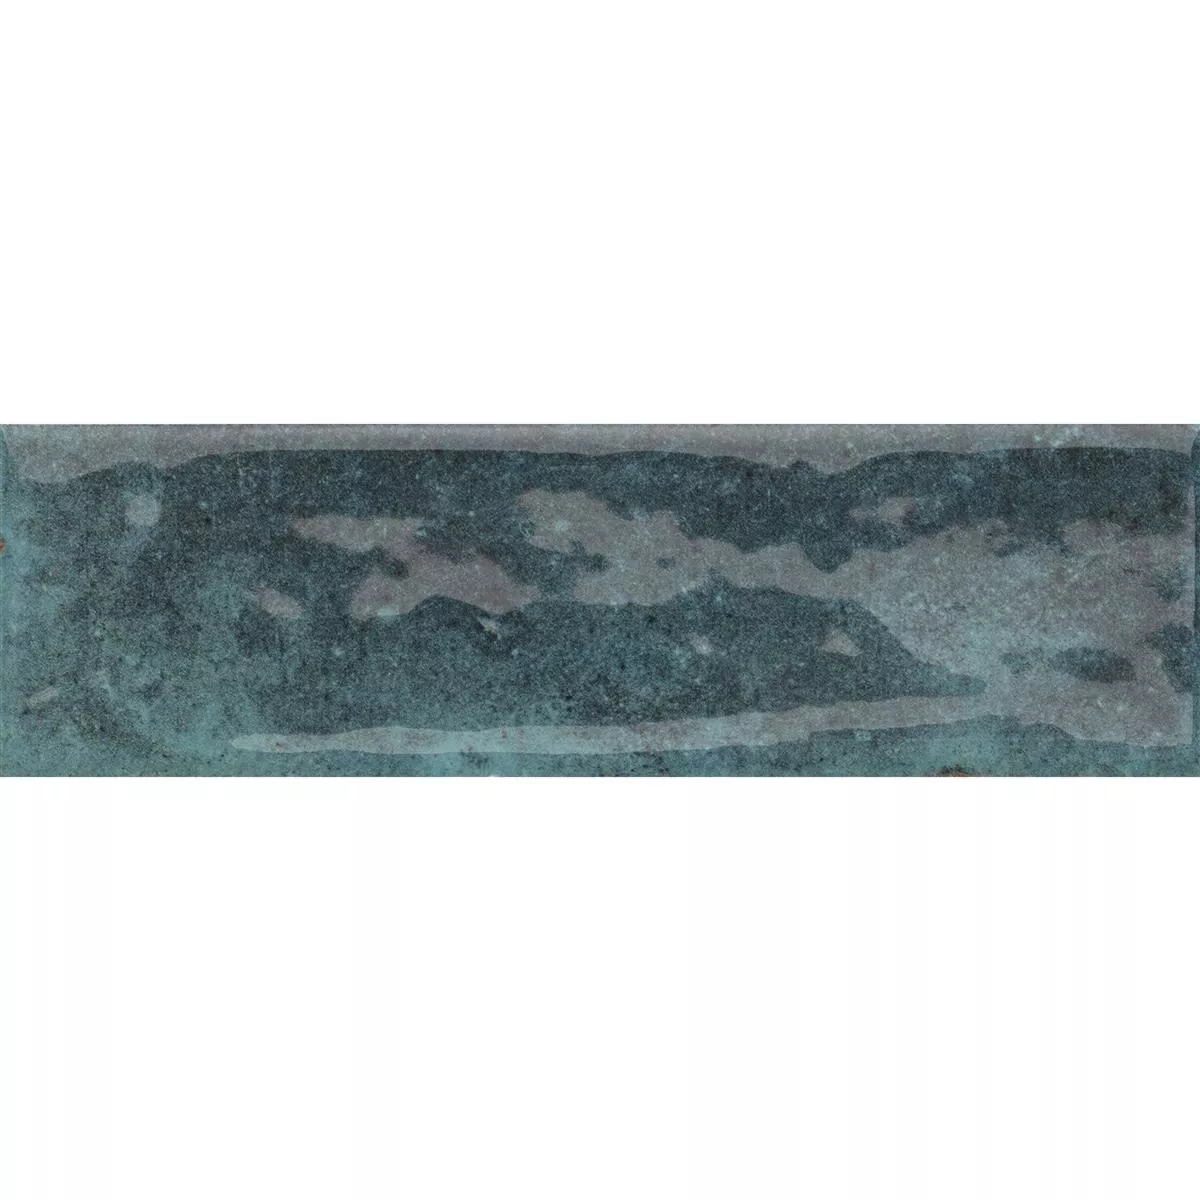 Próbka Płytki Ścienne Arosa Błyszczący Karbowany Niebieski 6x25cm